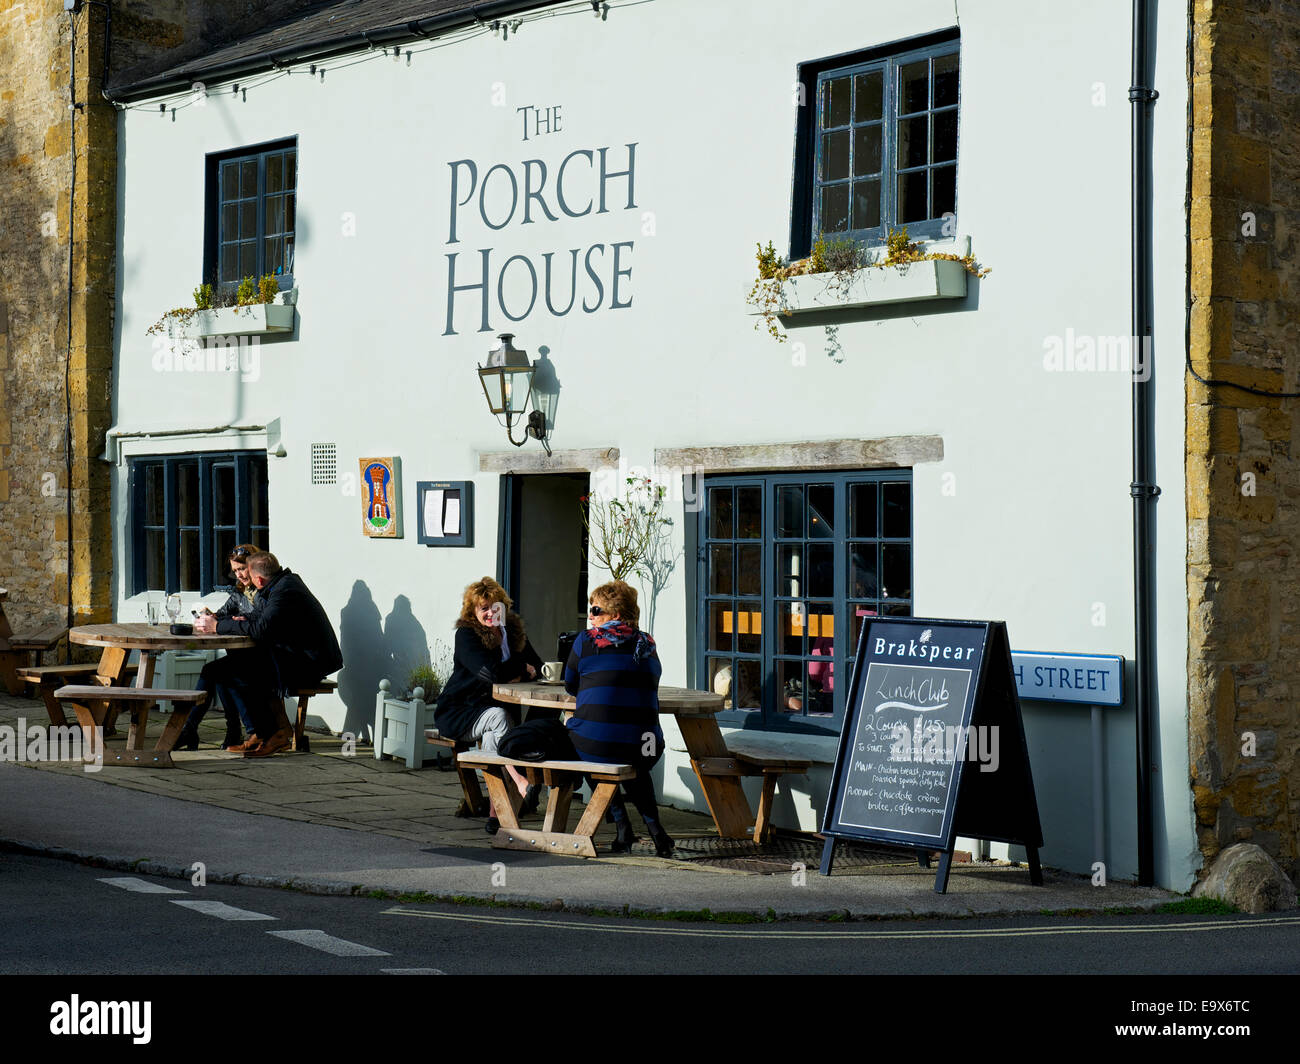 Le Porche chambre, un candidat pour être le plus vieux pub de l'Angleterre, Stow-dans-le-Wold, Gloucestershire, Angleterre, Royaume-Uni Banque D'Images